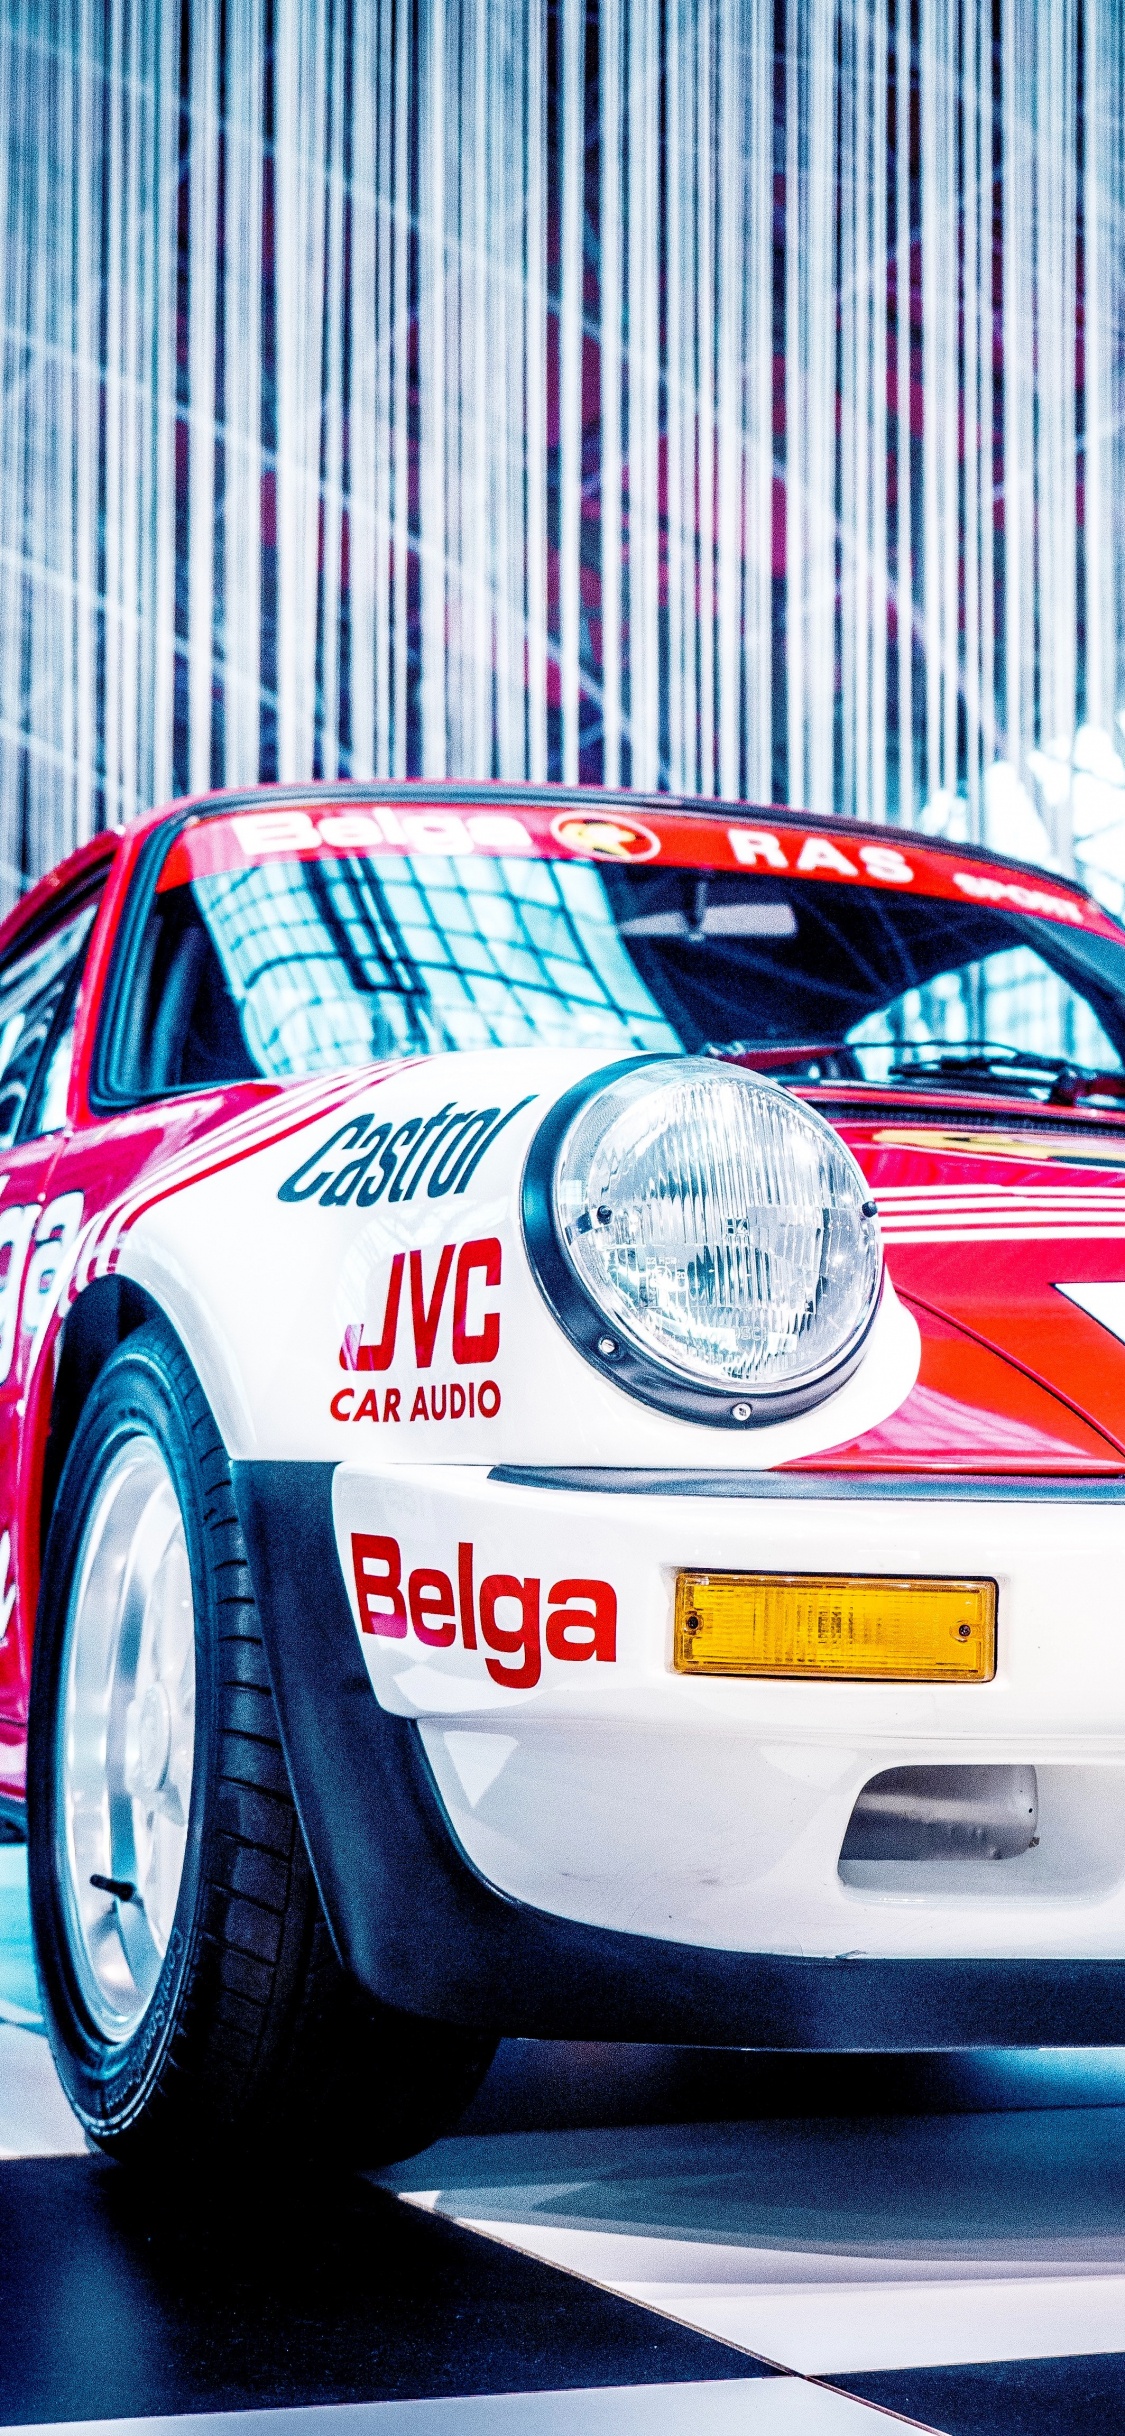 Weißer Und Roter Porsche 911. Wallpaper in 1125x2436 Resolution